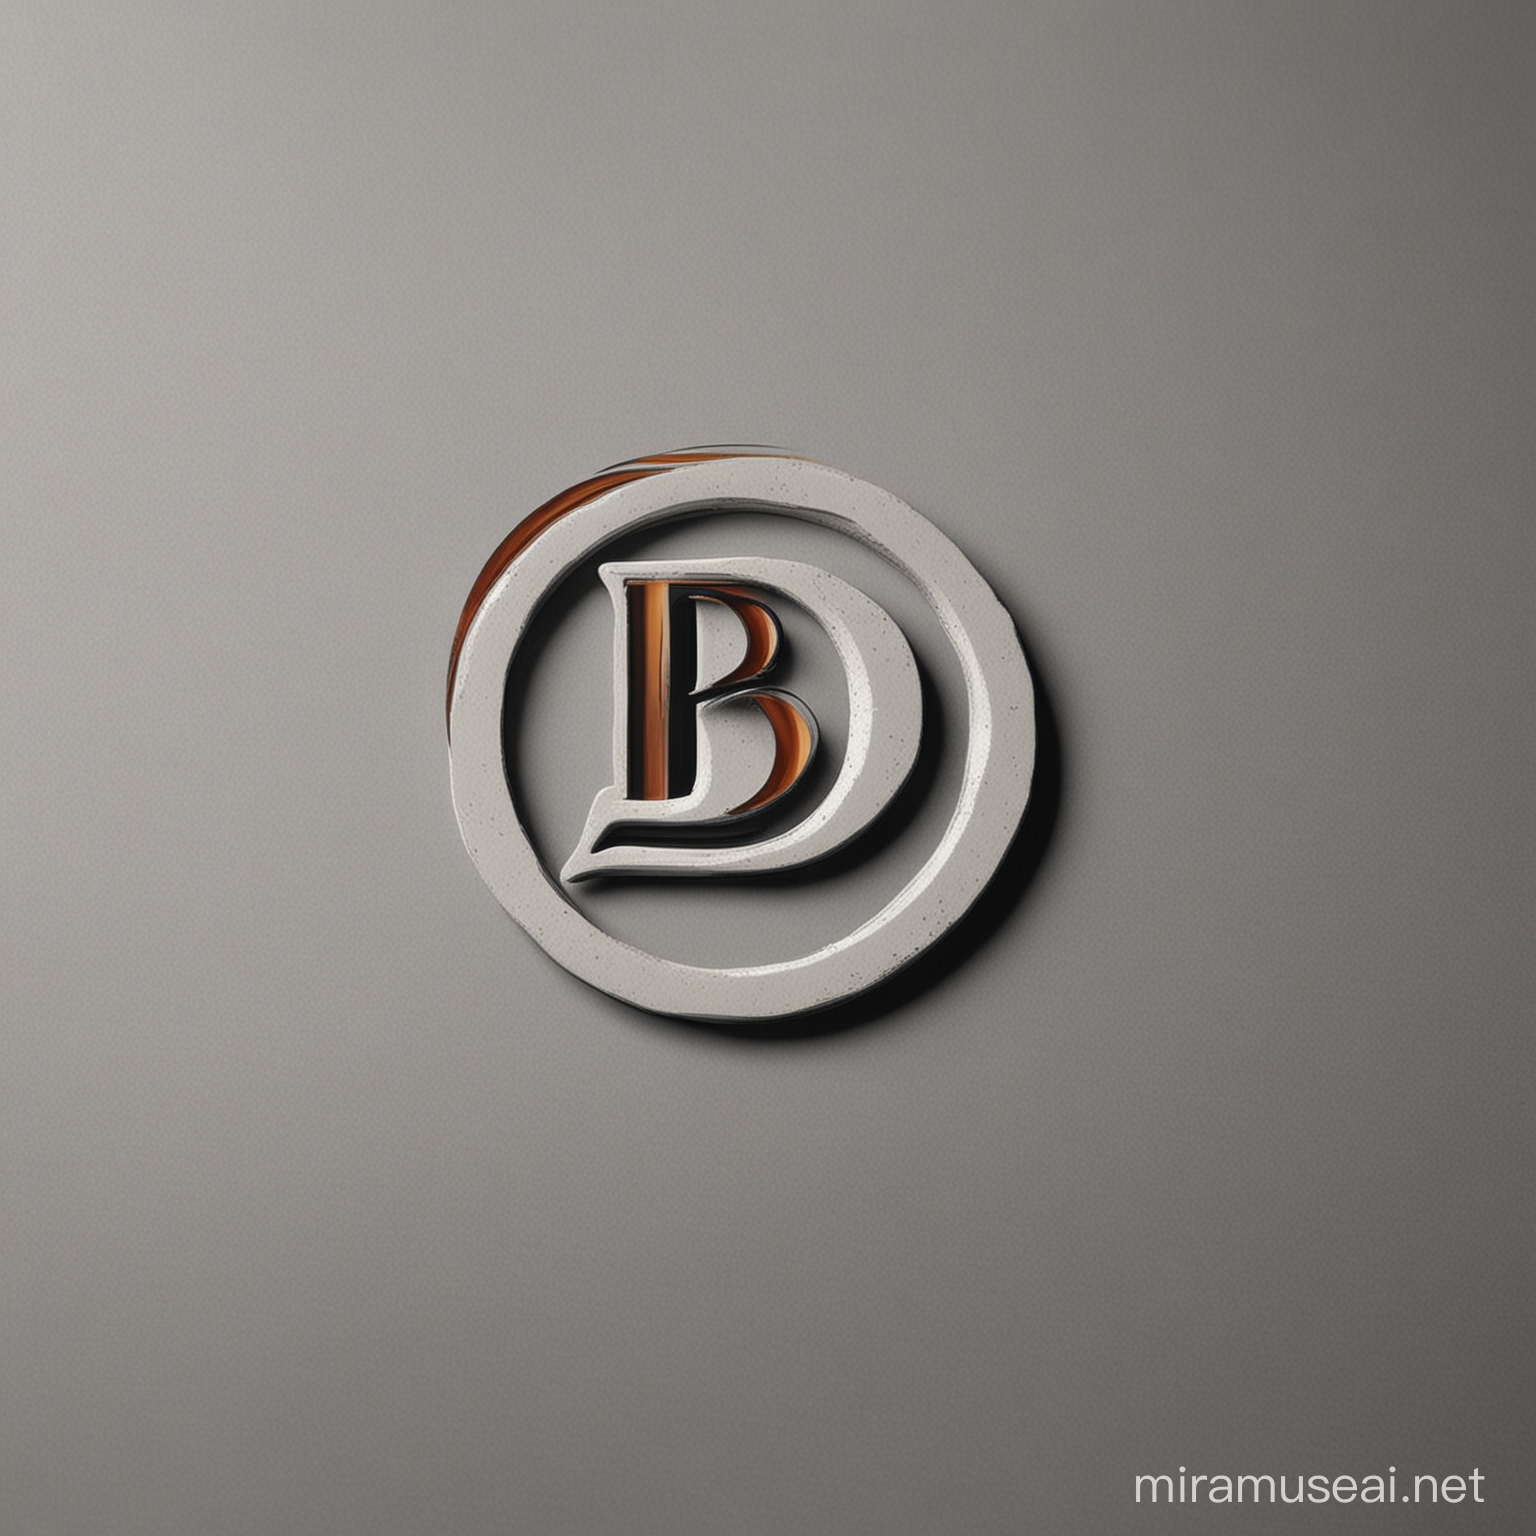 "BD" harfleri ile dekor işi yapan bir firma için logo tasarla